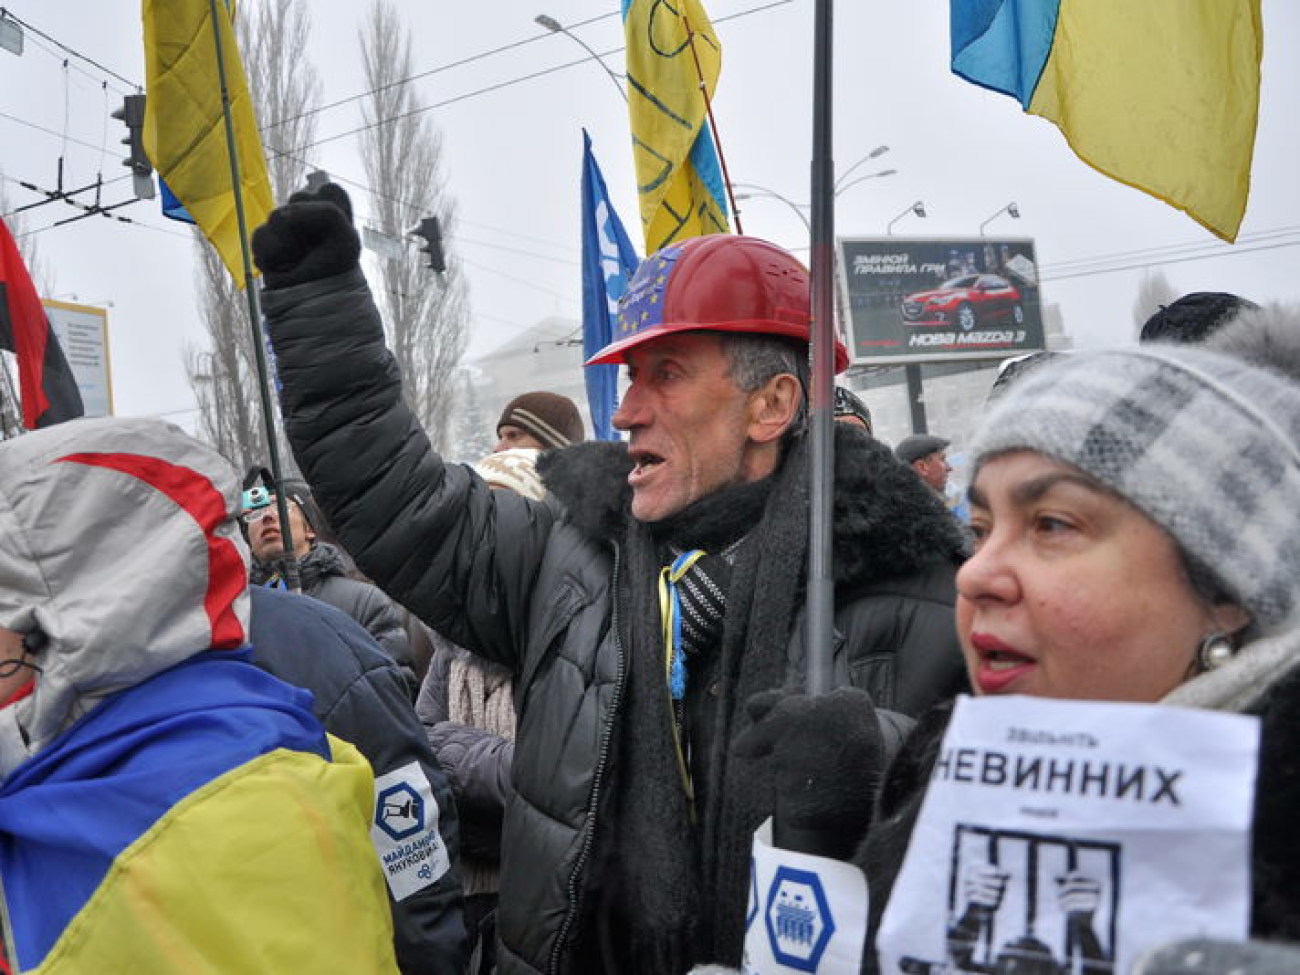 Евромайдановцы пришли в суд поддержать задержанных возле АП, 12 декабря 2013г.